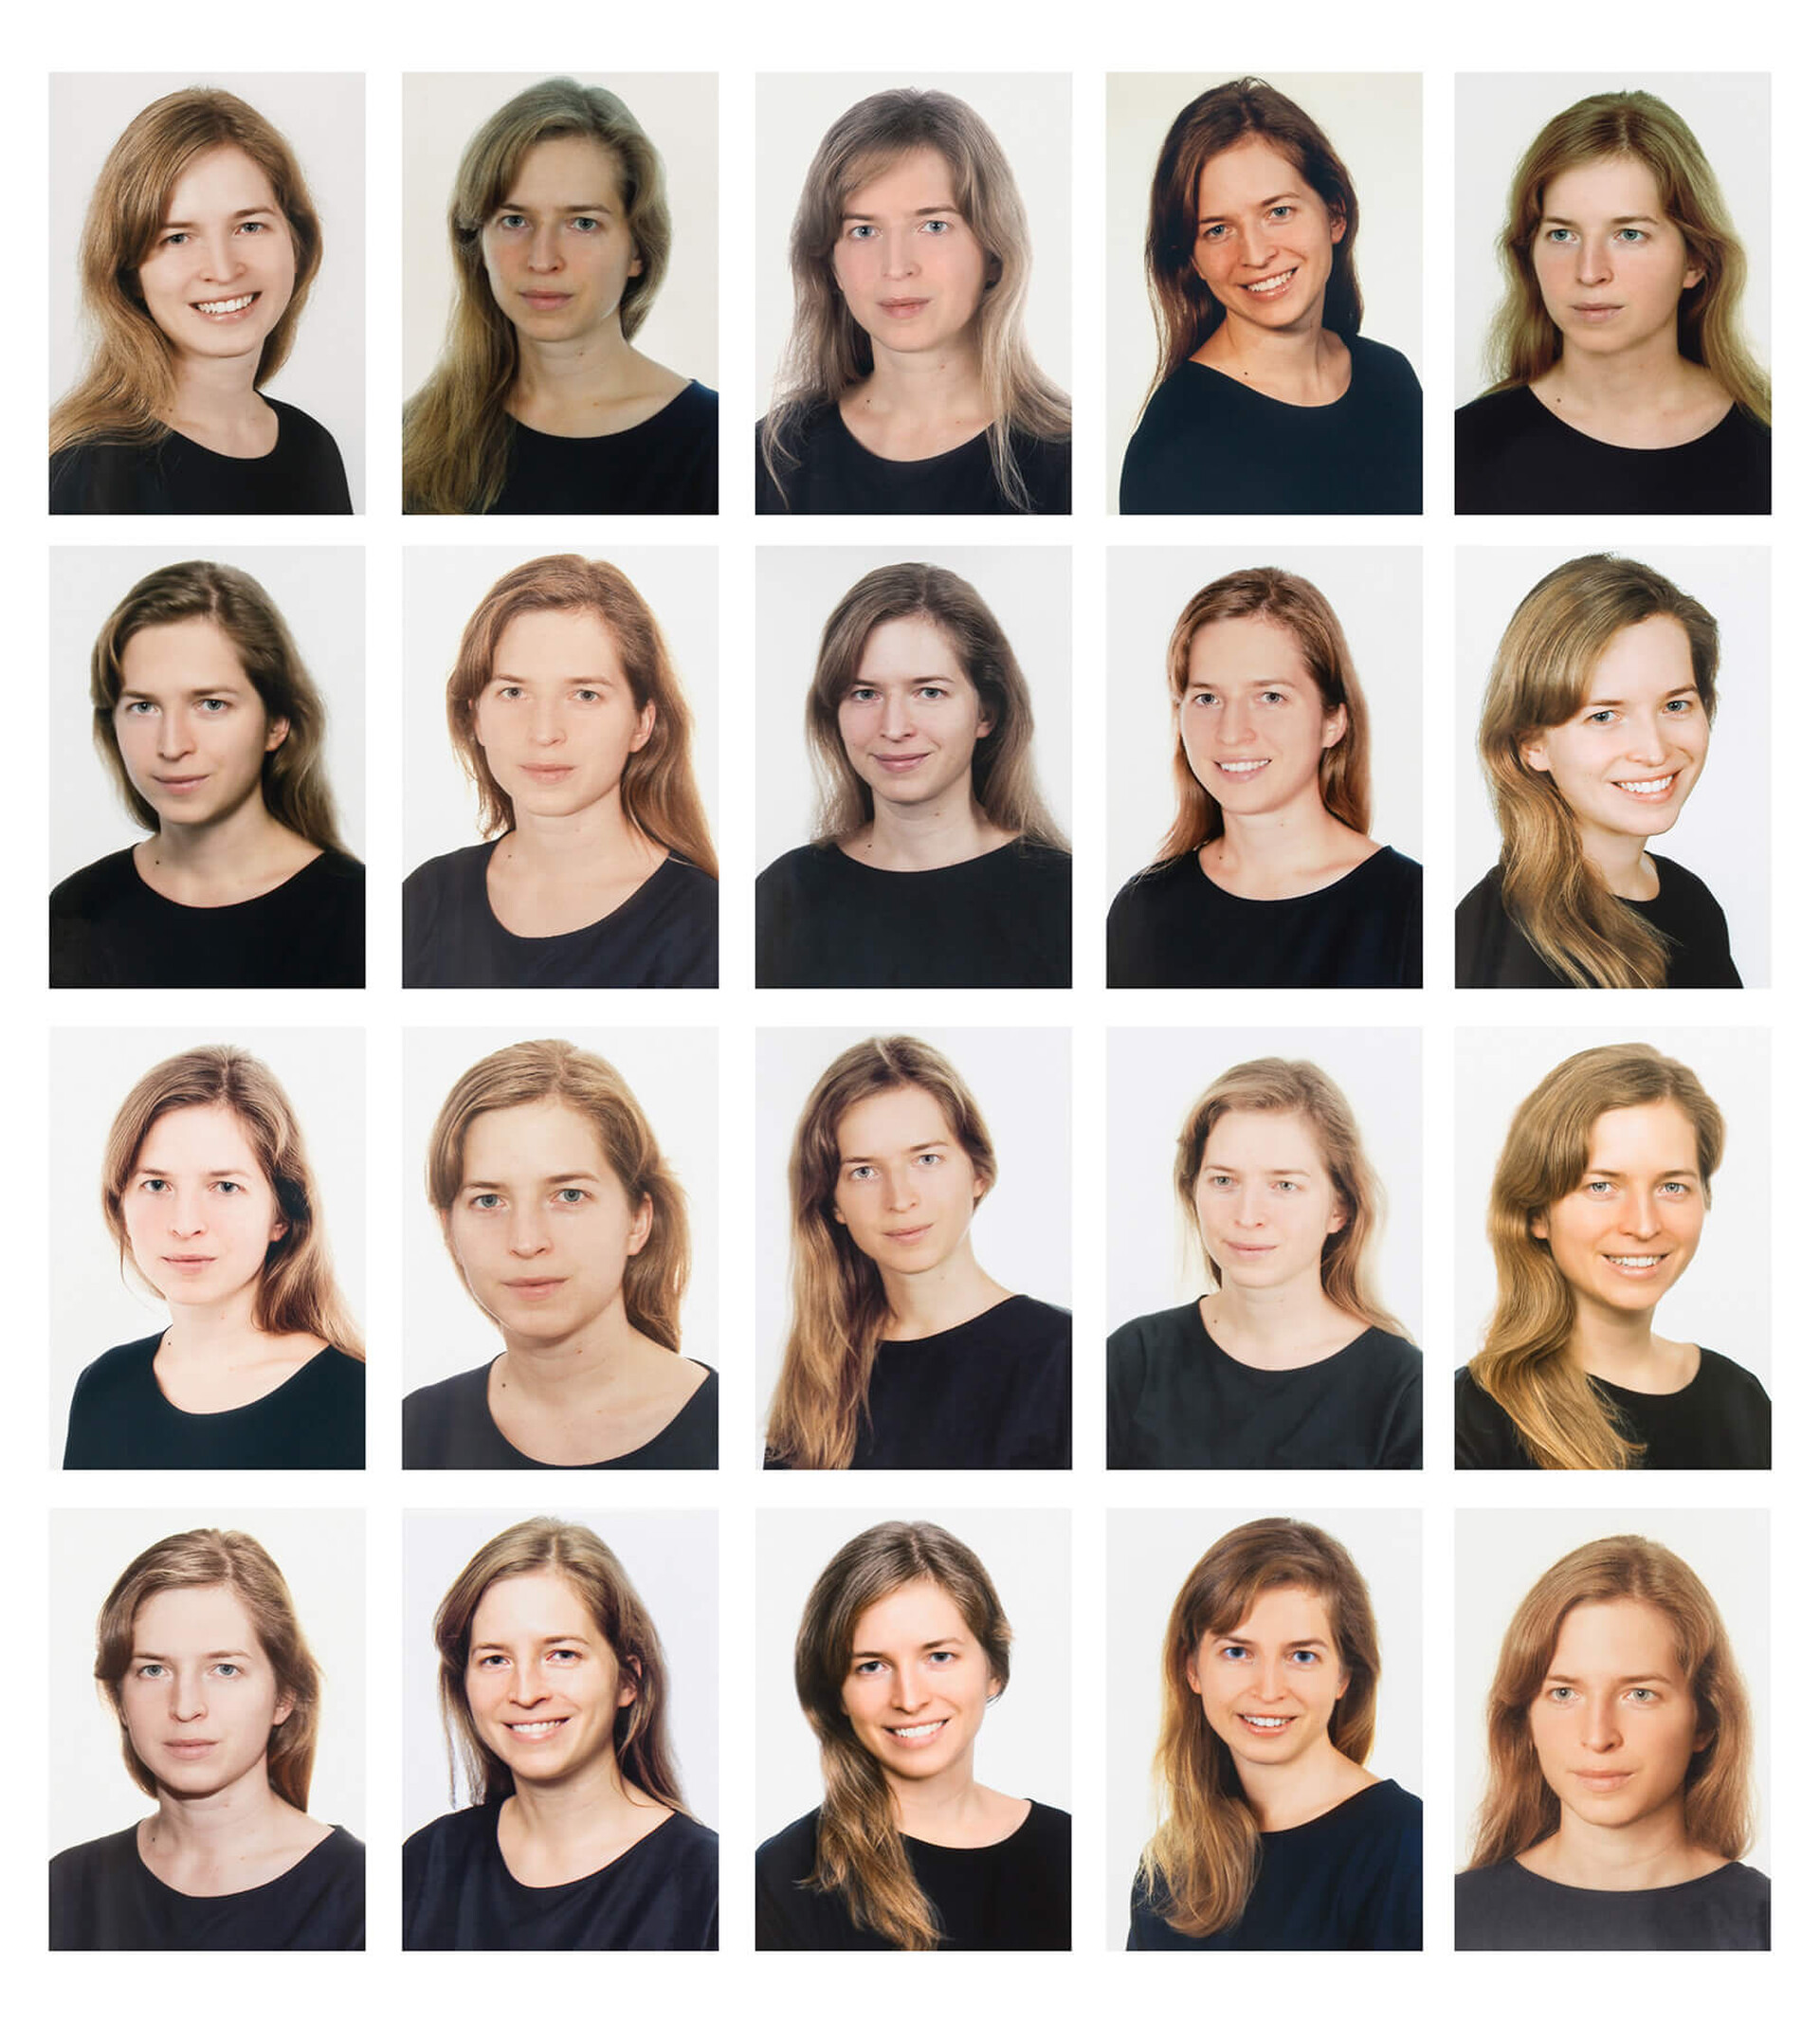  Obraz składa się 25 małych zdjęć portretowych, takich jak do dokumentów, ułożonych w pięć rzędów po pięć zdjęć. Wszystkie zdjęcia przedstawiają tę samą osobę: młodą kobietę z długimi, jasnymi włosami, ubraną w czarną bluzkę. 